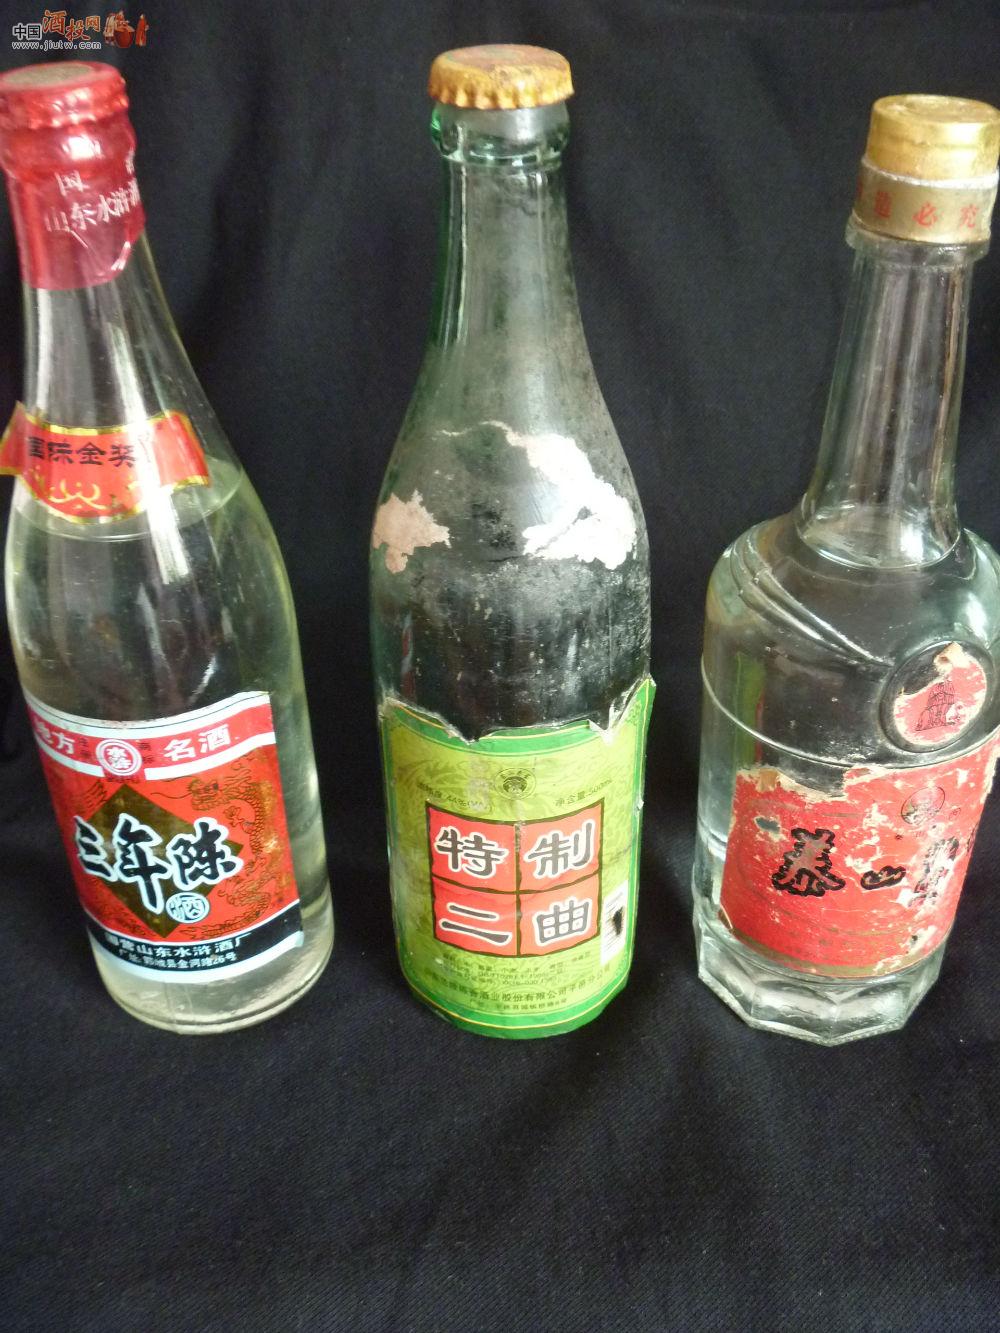 低价处理三瓶90年代的山东地方酒!水浒\/兰陵\/泰